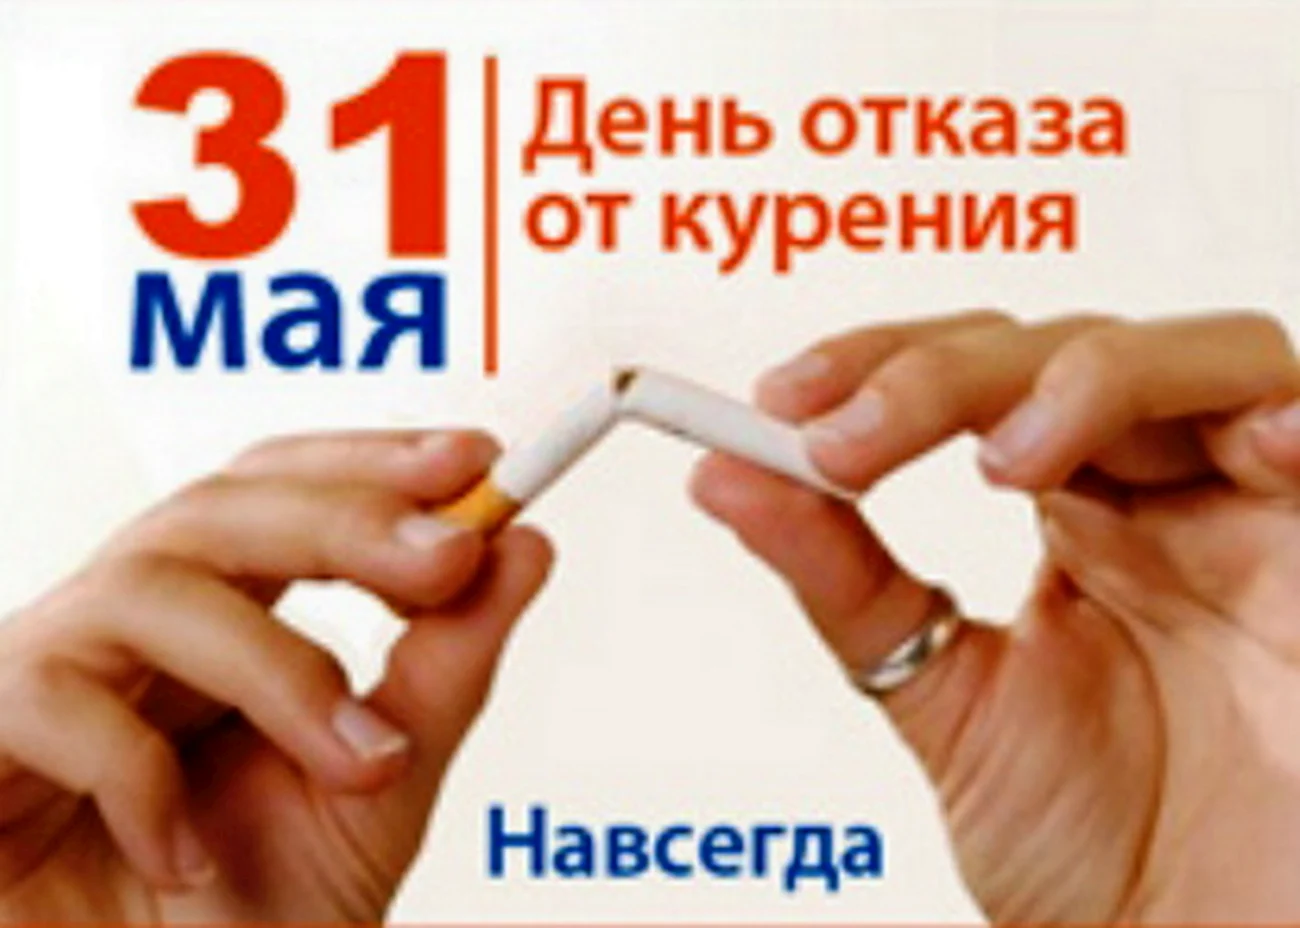 31 Мая Всемирный день отказа от курения. Поздравление